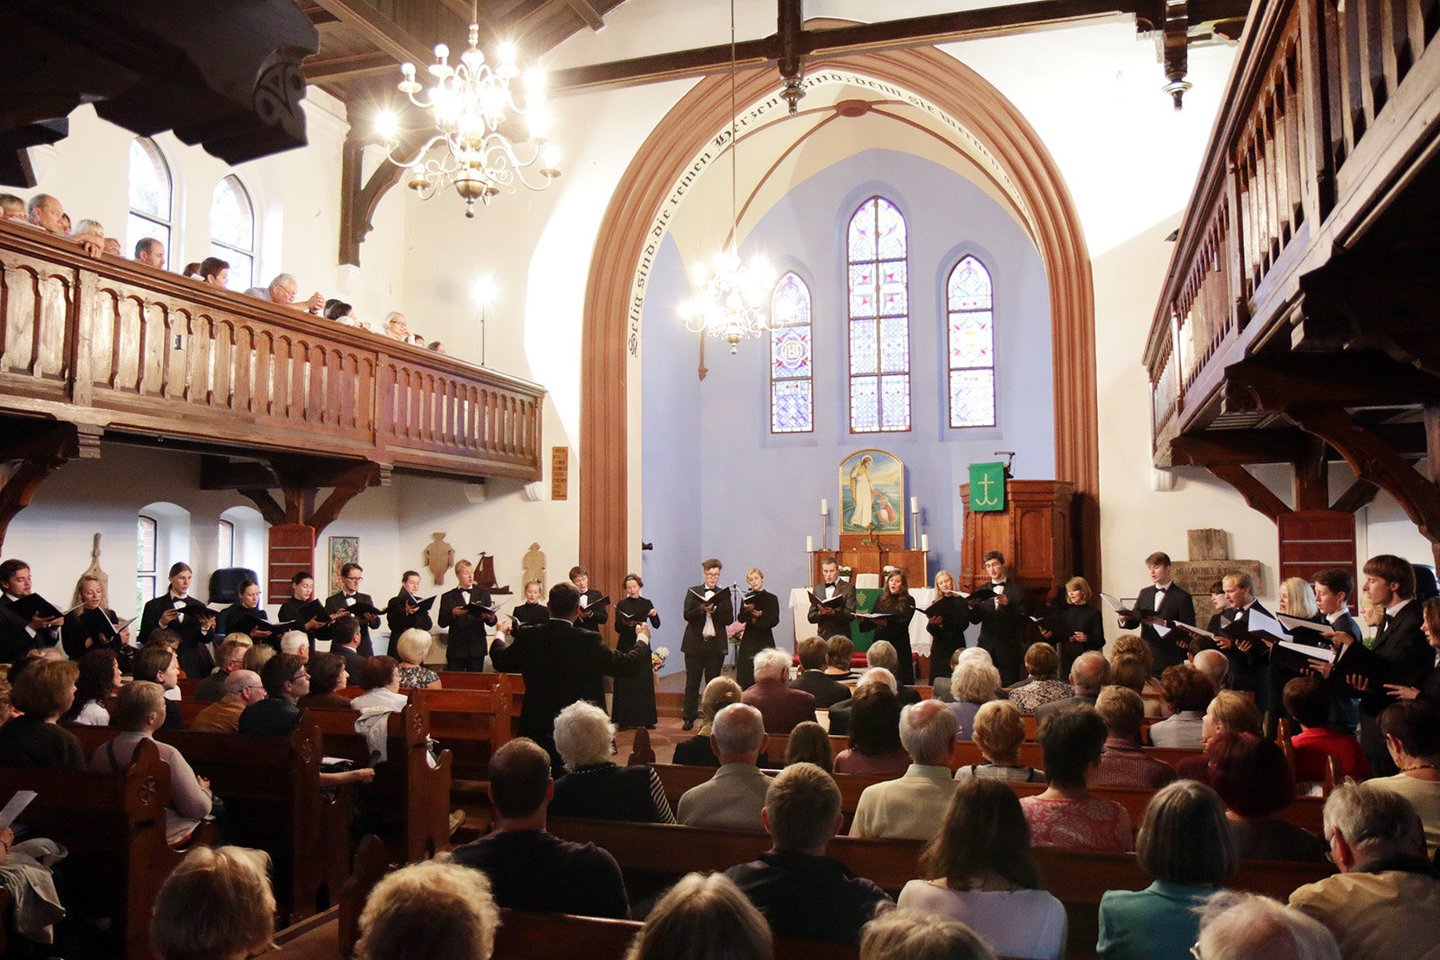  Festivalis prasidės koncertu Nidos evangelikų liuteronų bažnyčioje.<br> Festivalio archyvo nuotr.